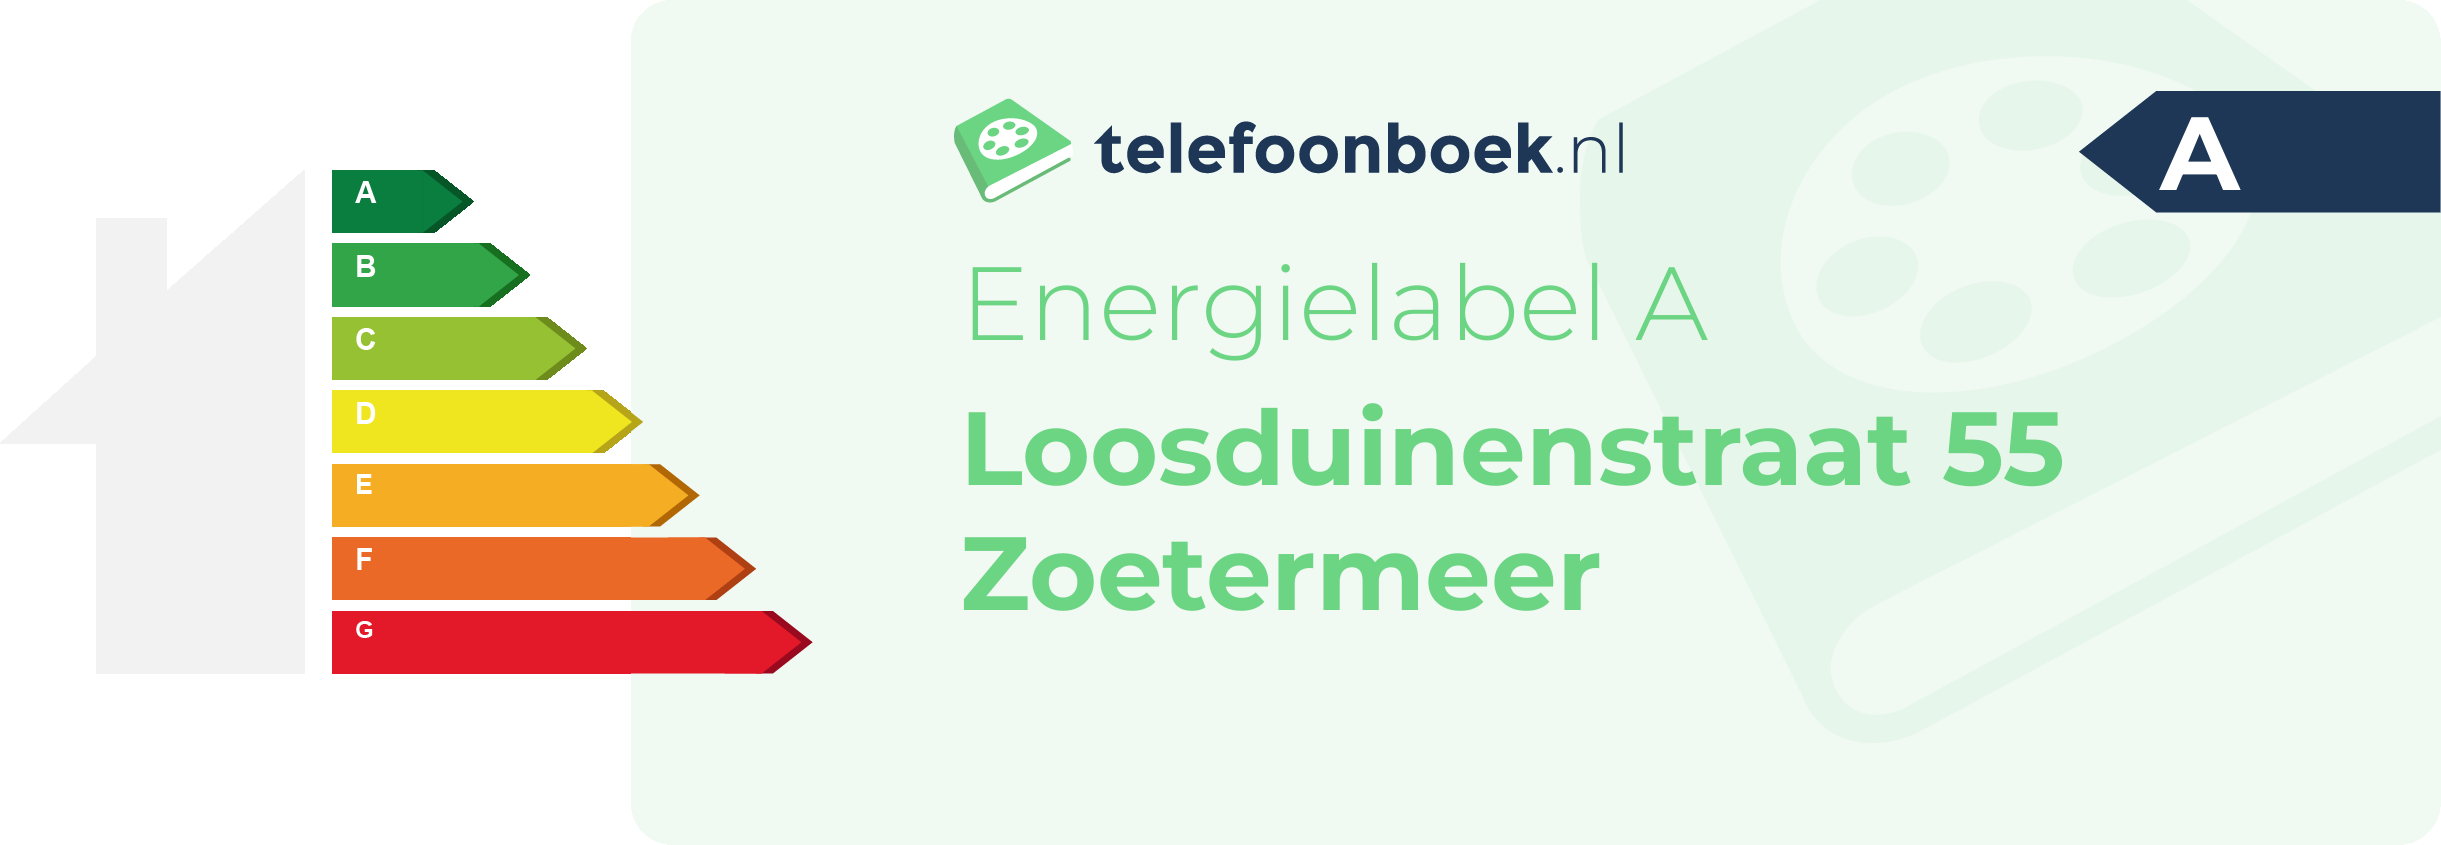 Energielabel Loosduinenstraat 55 Zoetermeer